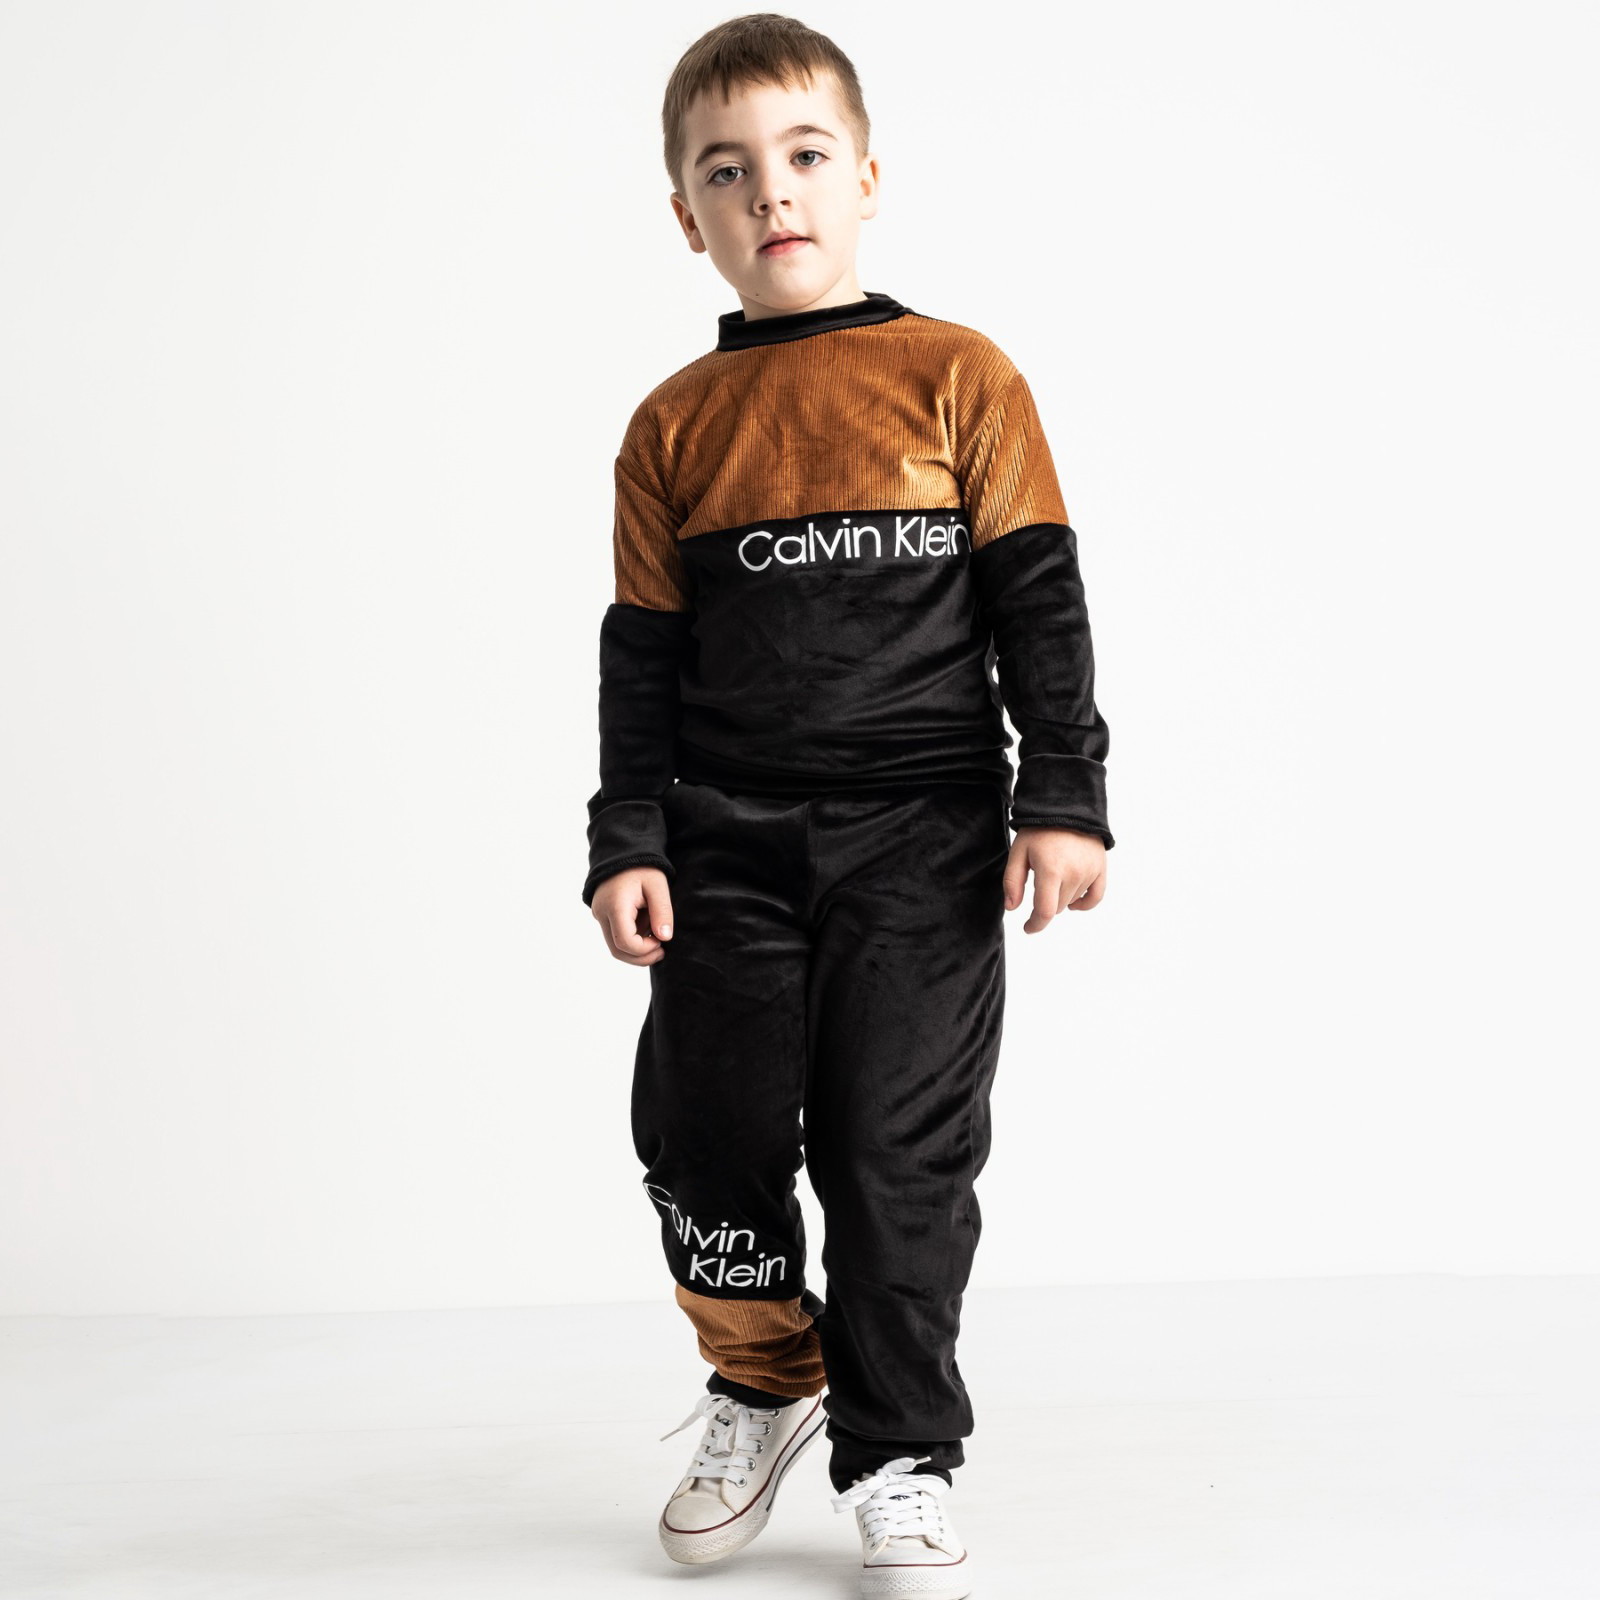 1440-2 коричневый спортивный костюм велюровый на мальчика 6-9 лет (4 ед. размеры: 116.122.128.134) 